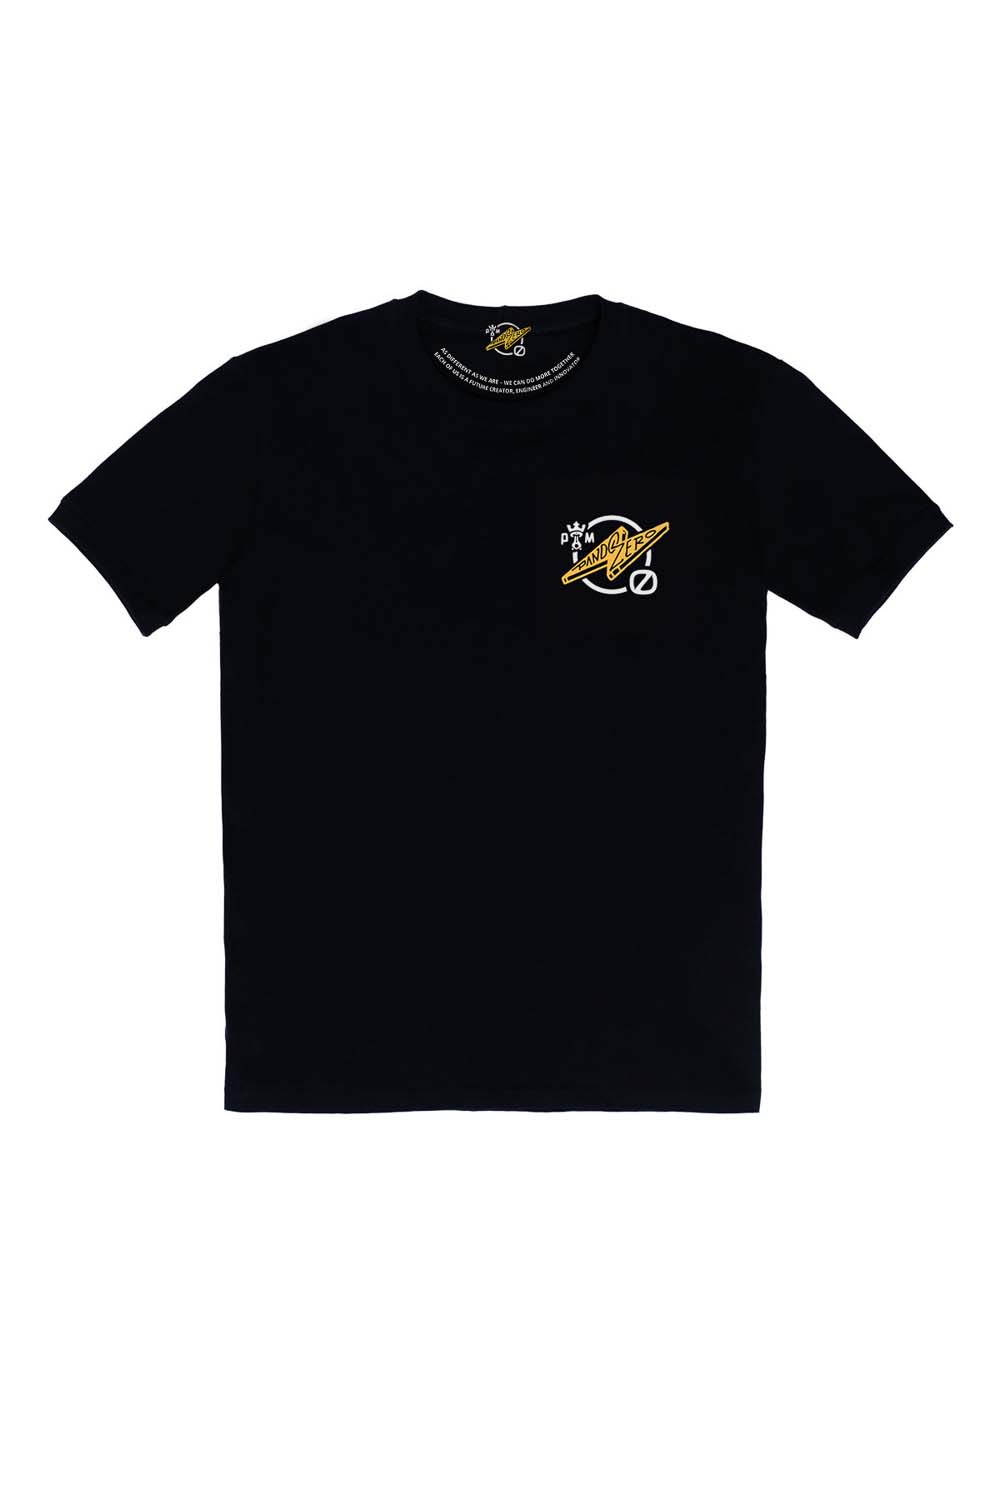 MIKE ZERO 1 - T-Shirt für Biker Regular Fit Limited Edition 2